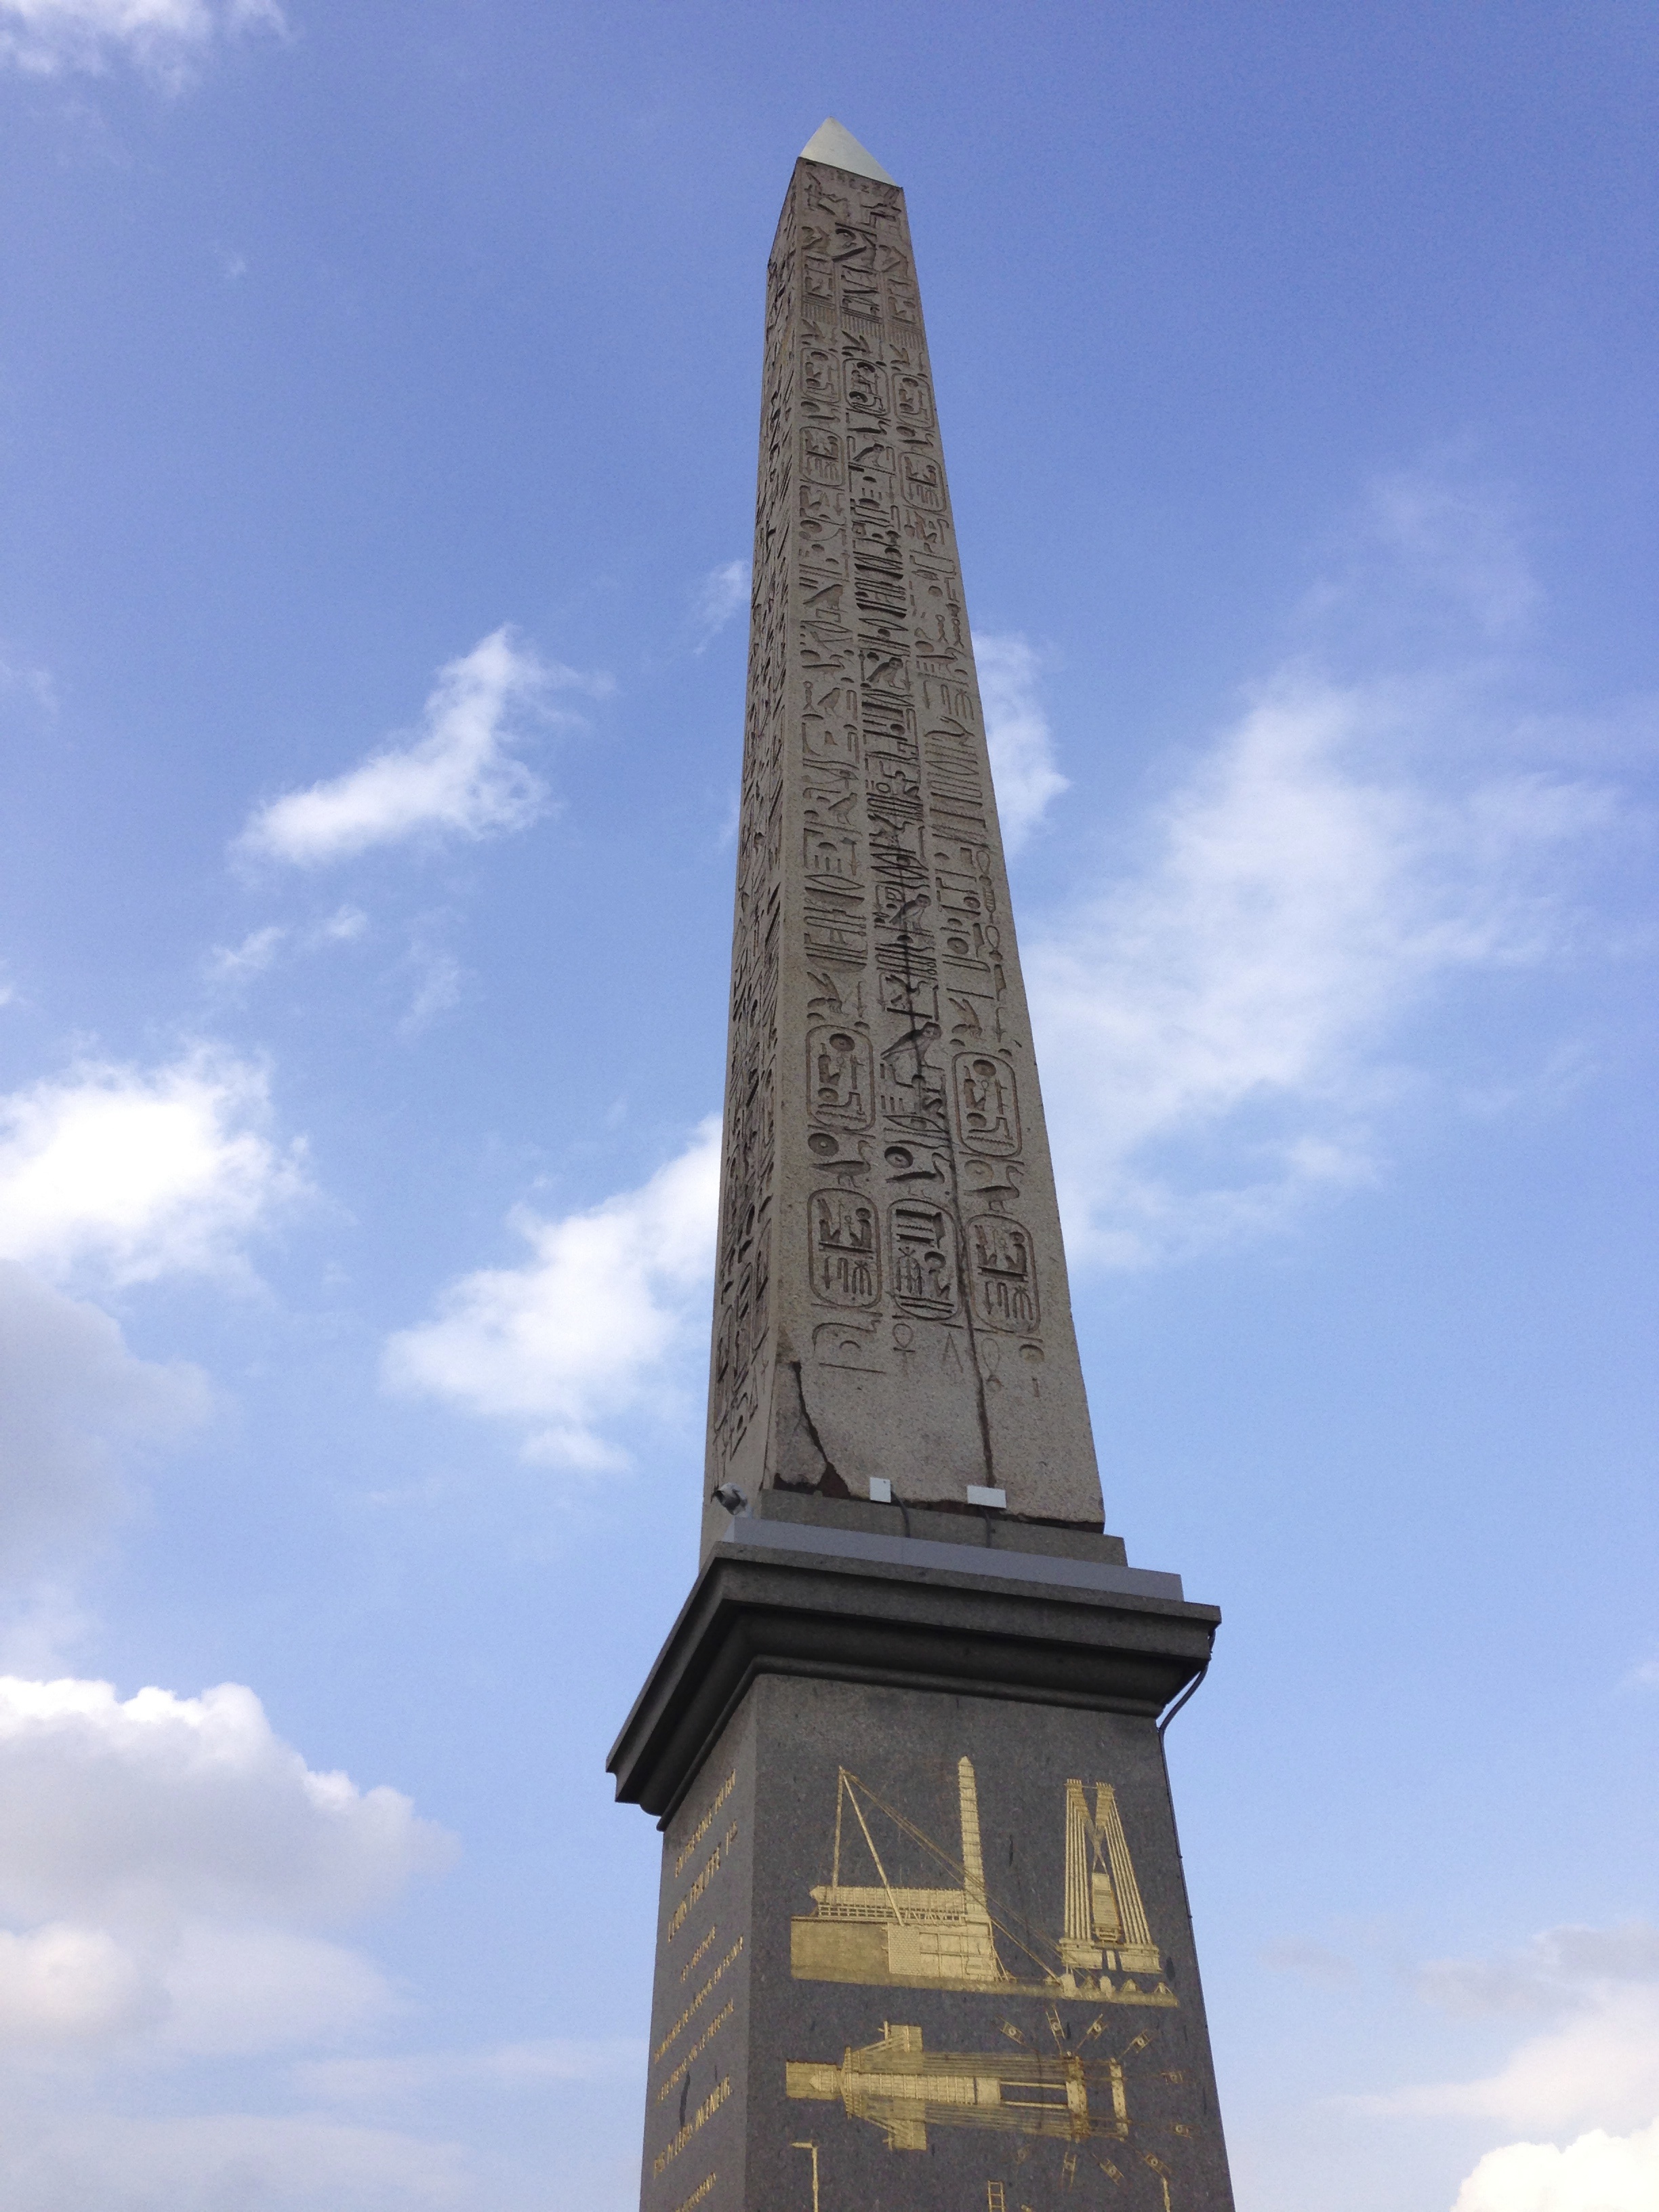 The Obelisk of Luxor